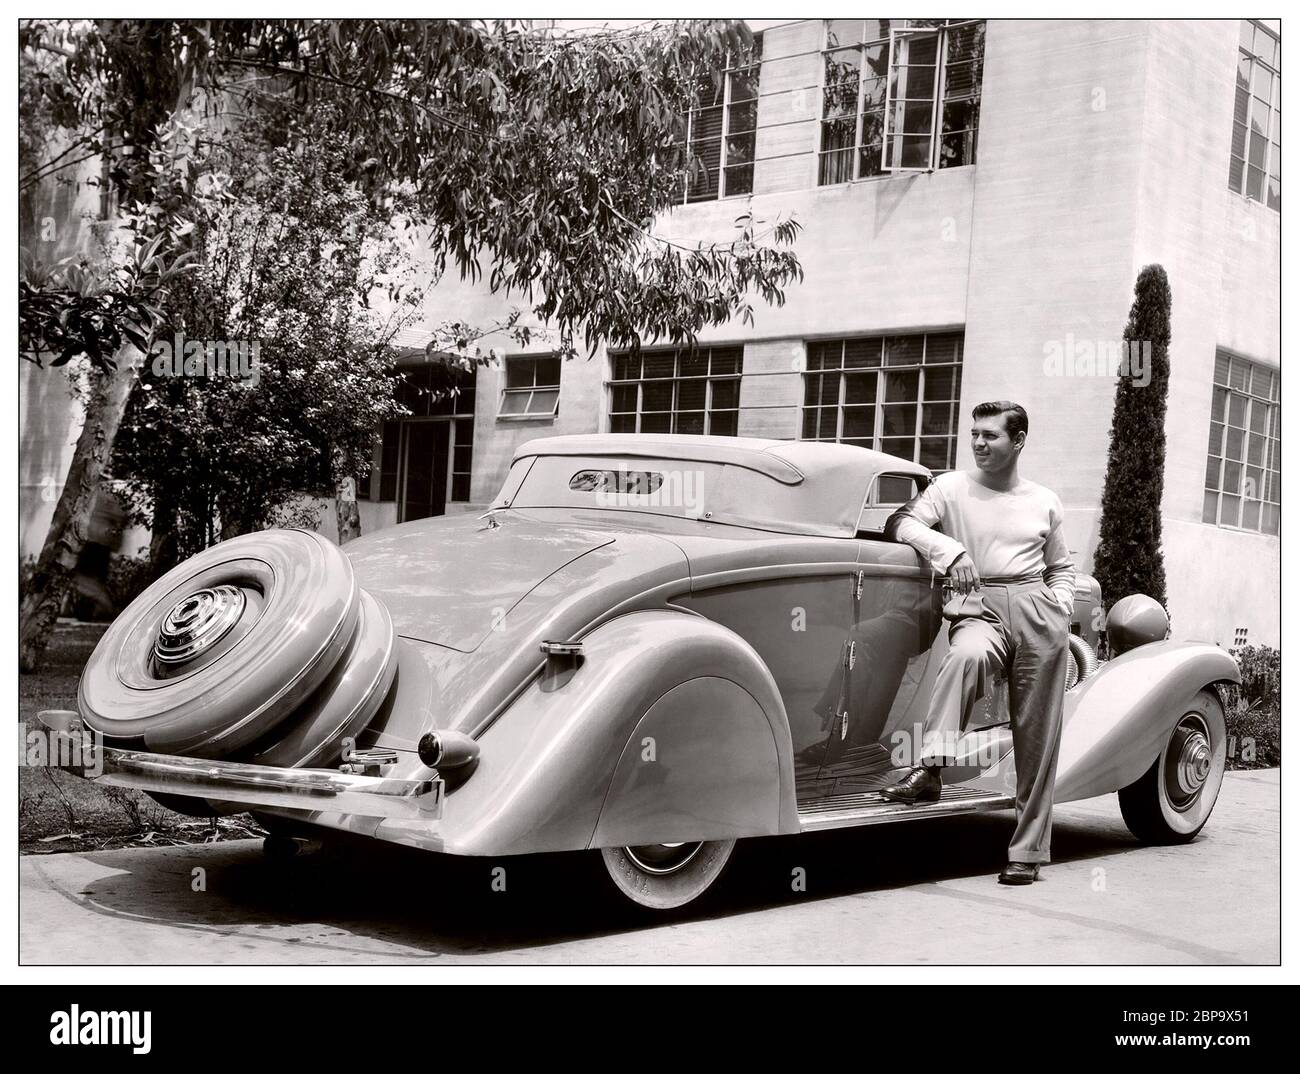 Clark Gable 1930er Archivbild mit Duesenberg JN 560/2585 Cabrio Coupé SWB von Bohman & Schwartz, & Clark Gable dieser Wagen wurde 1935 von Clark Gable gekauft und wurde ursprünglich von Rollston als Cabrio-Coupé verbaut. Es wurde von Bohman & Schwartz aus Pasadena, CA, neu gestaltet und zu Skizzen entworfen, die Ideen und Formen widerspiegeln, die von Gable selbst vorgeschlagen wurden. Es wurde von Gable während seiner Balz von Carole Lombard, und wurde häufig während ihrer Ehe, dann aufgegeben von Gable nach ihrem frühen Tod im Jahre 1942. Stockfoto